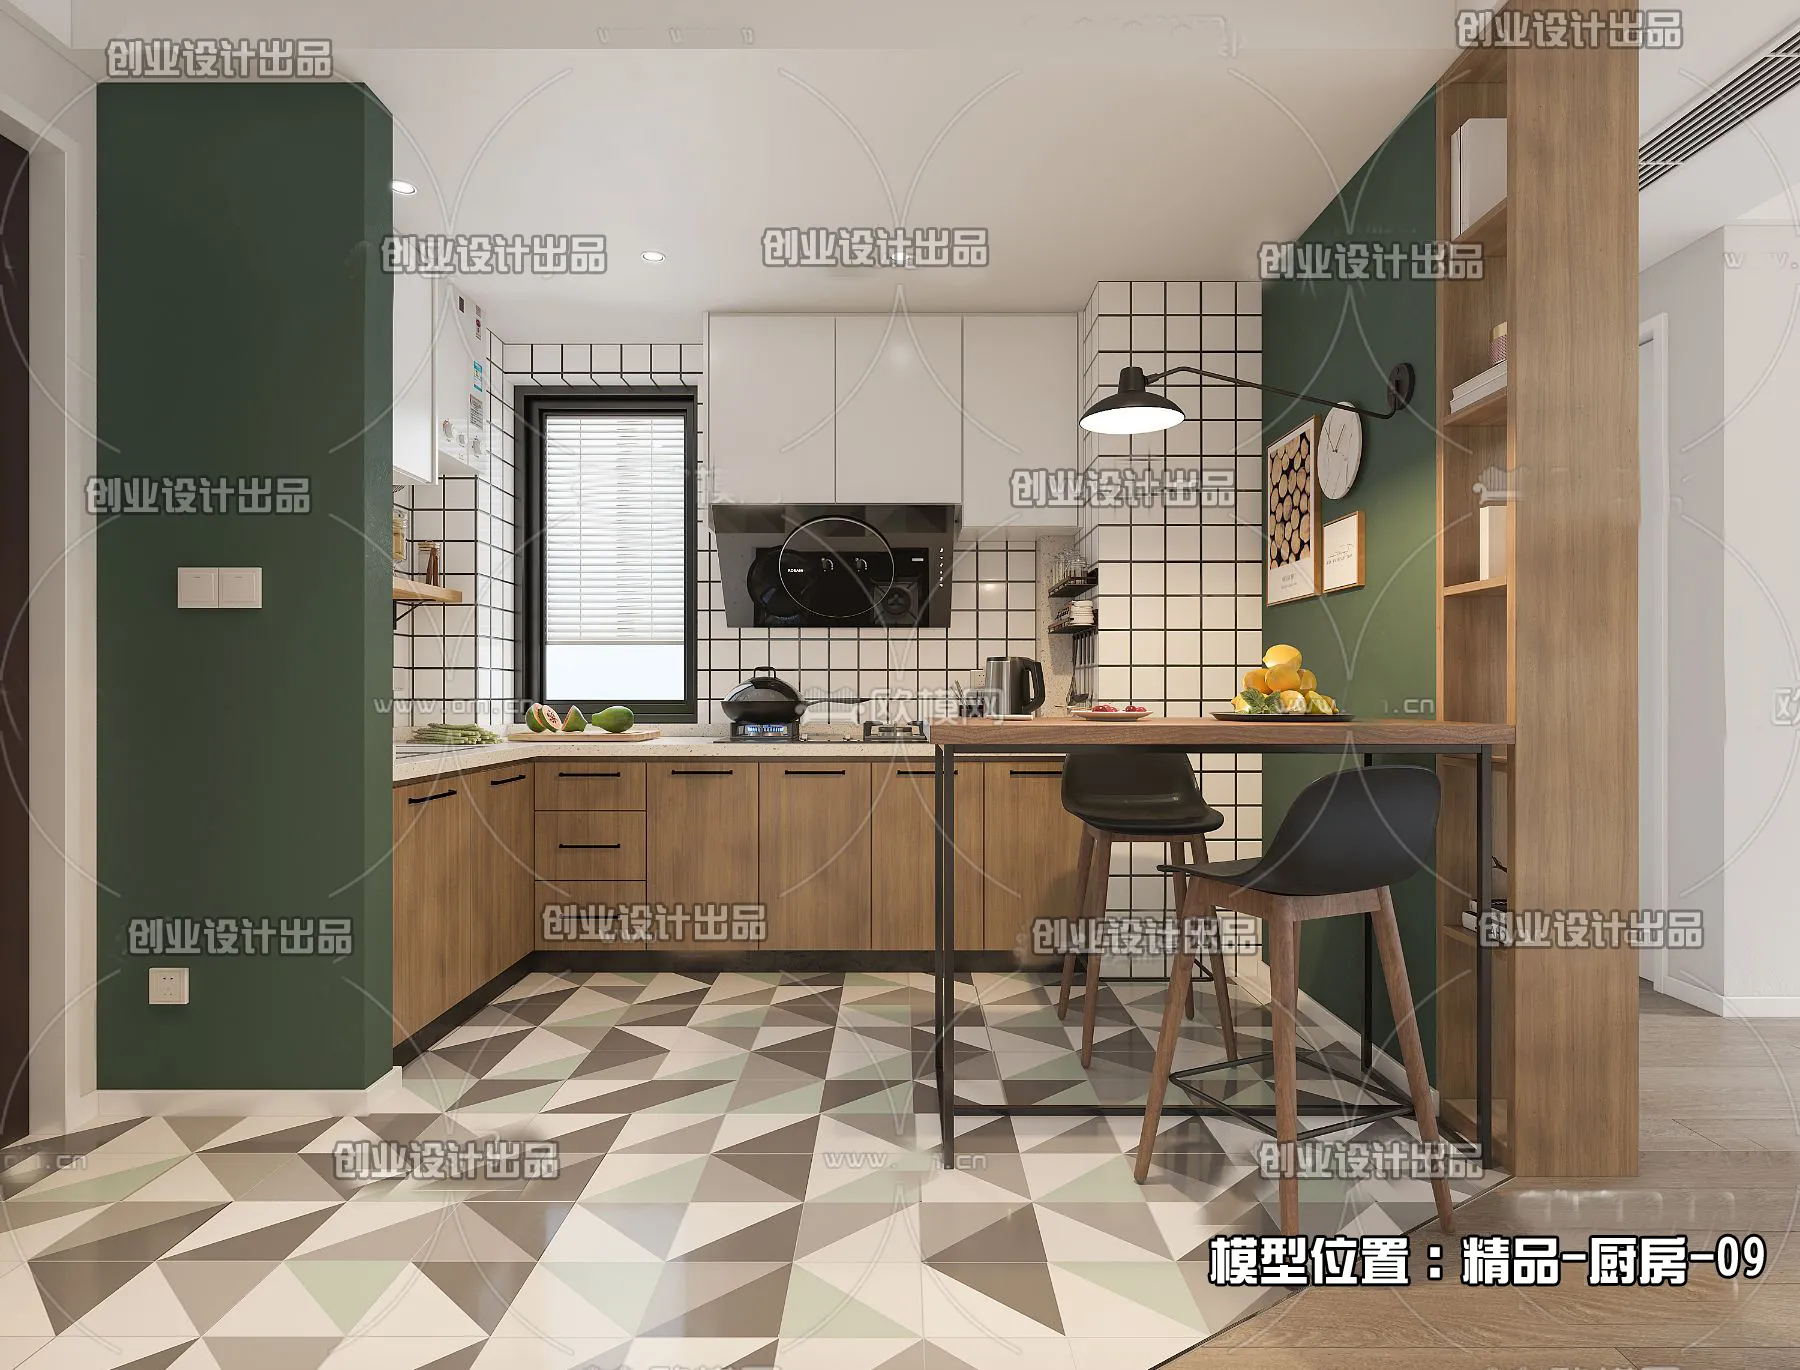 Kitchen – Scandinavian architecture – 030